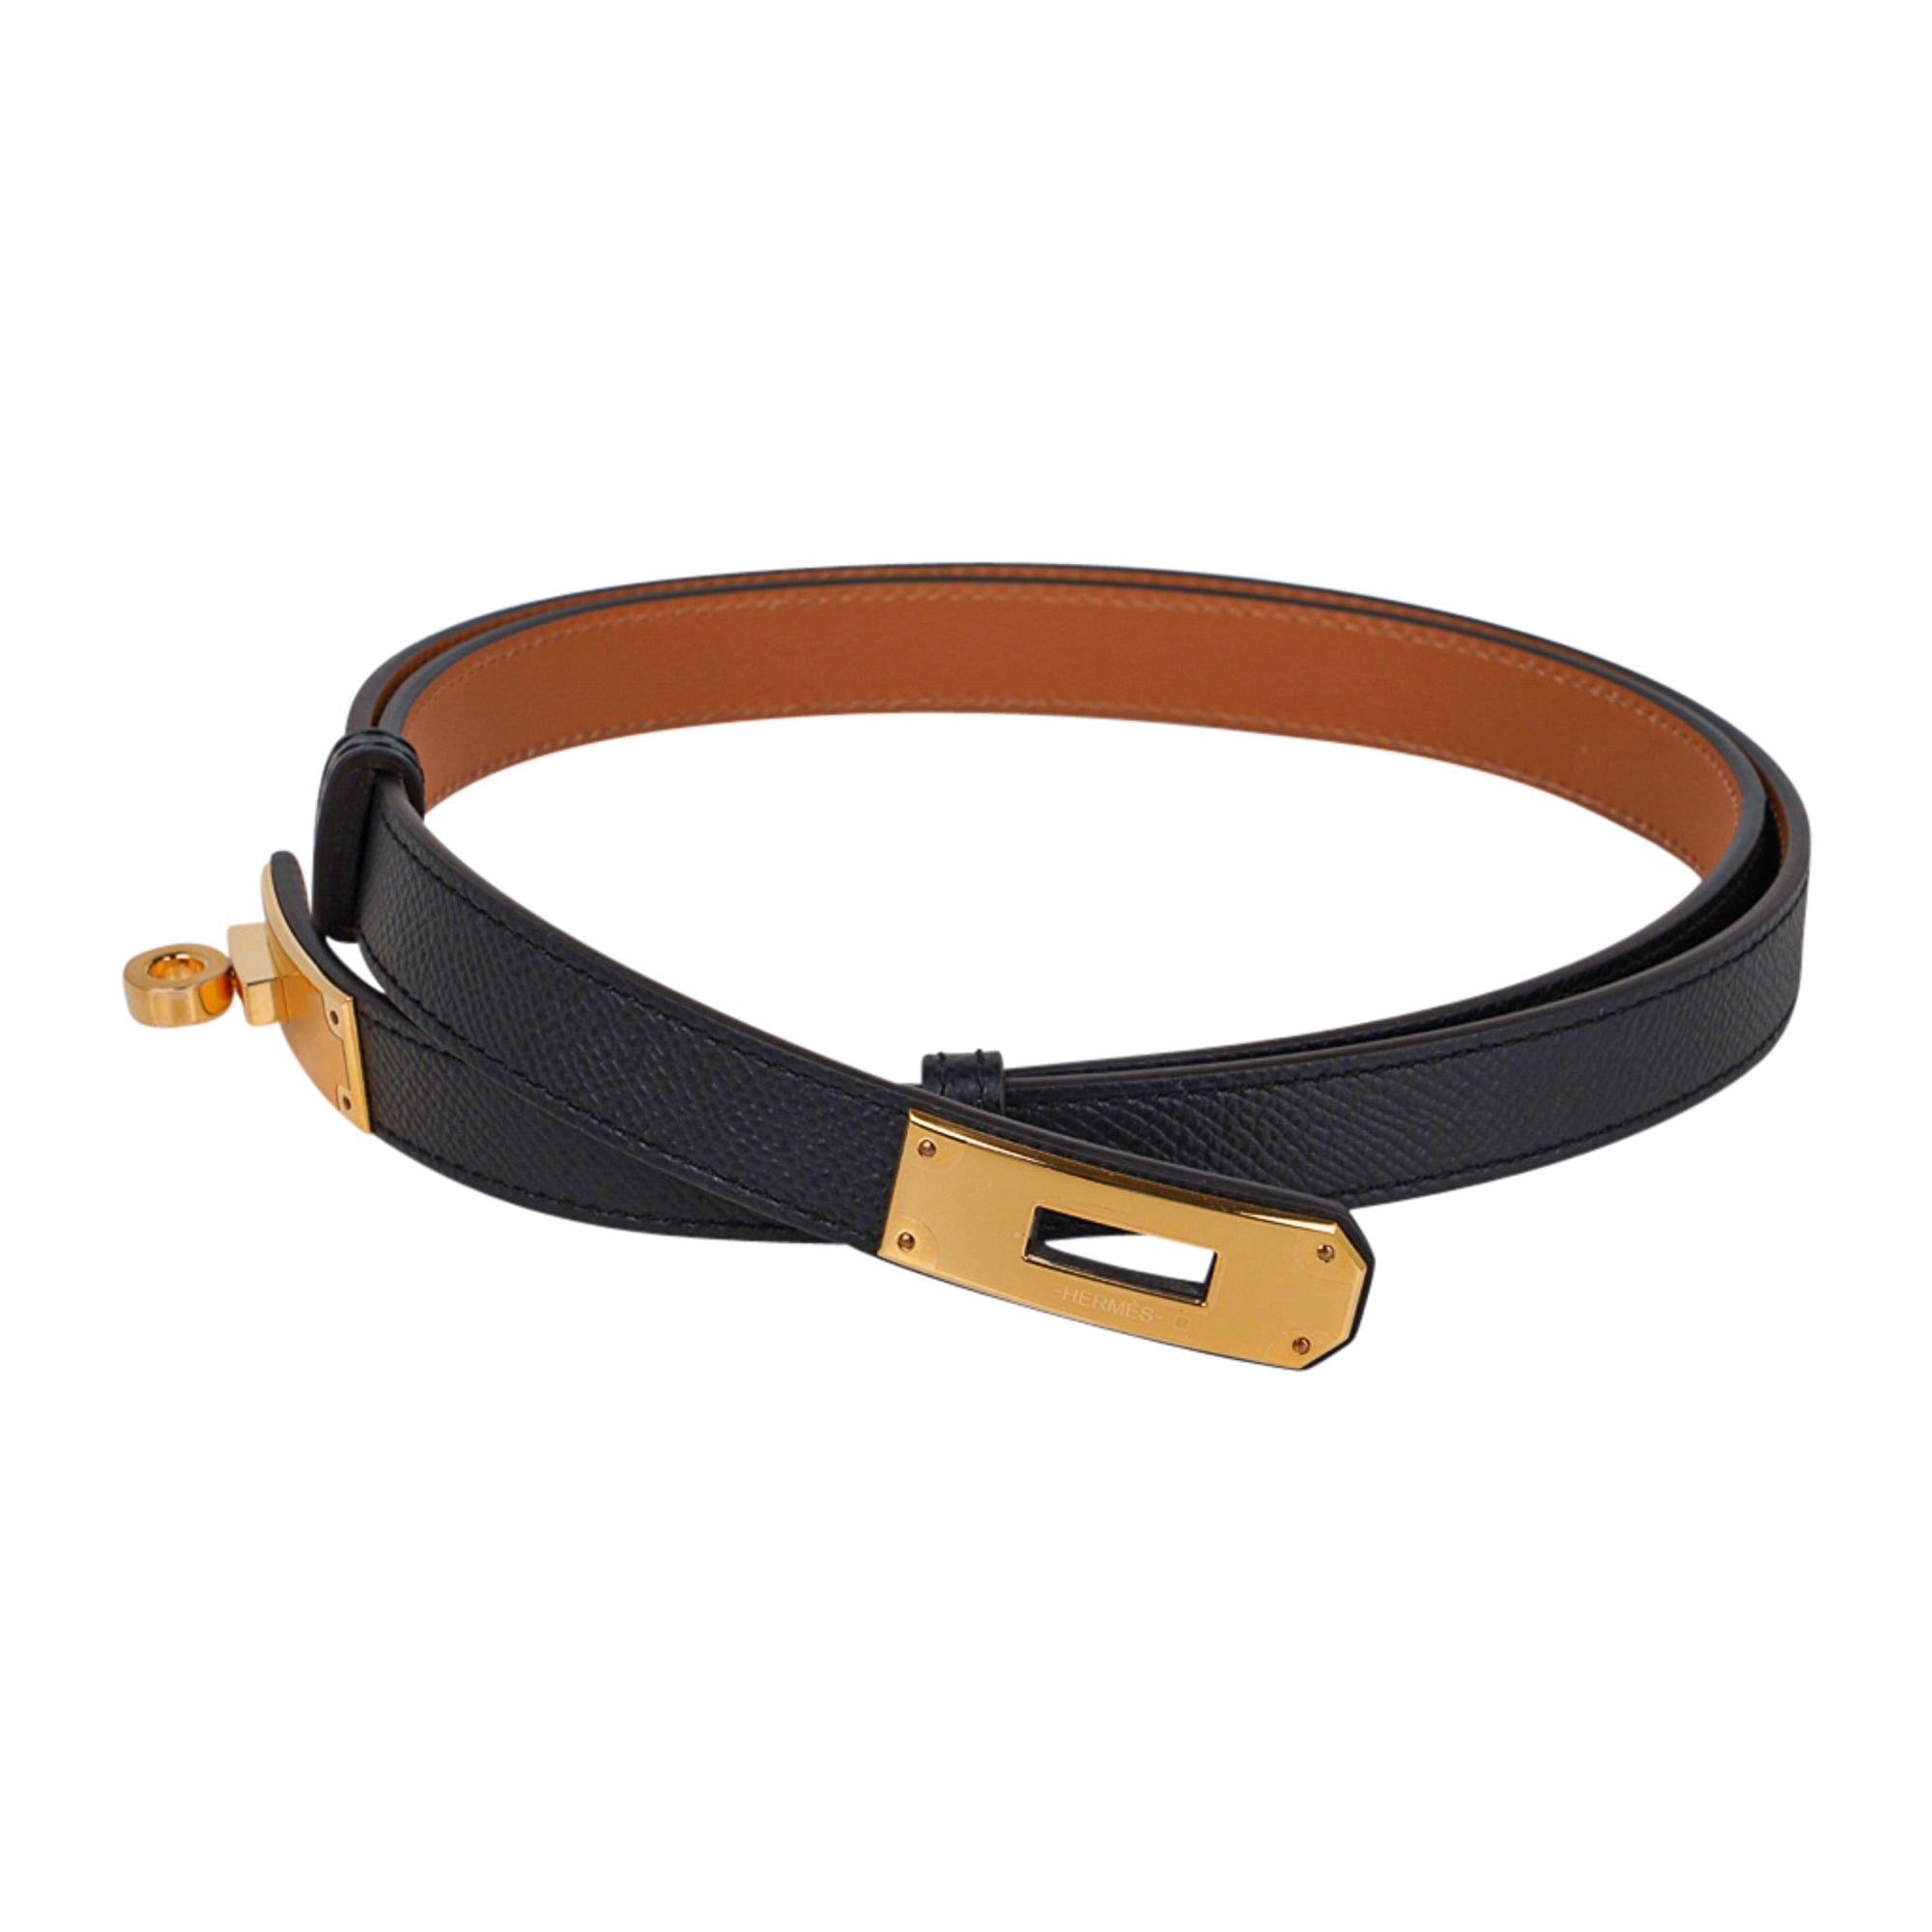 Replica Hermes Kelly 18 Belt In Gold Epsom Leather